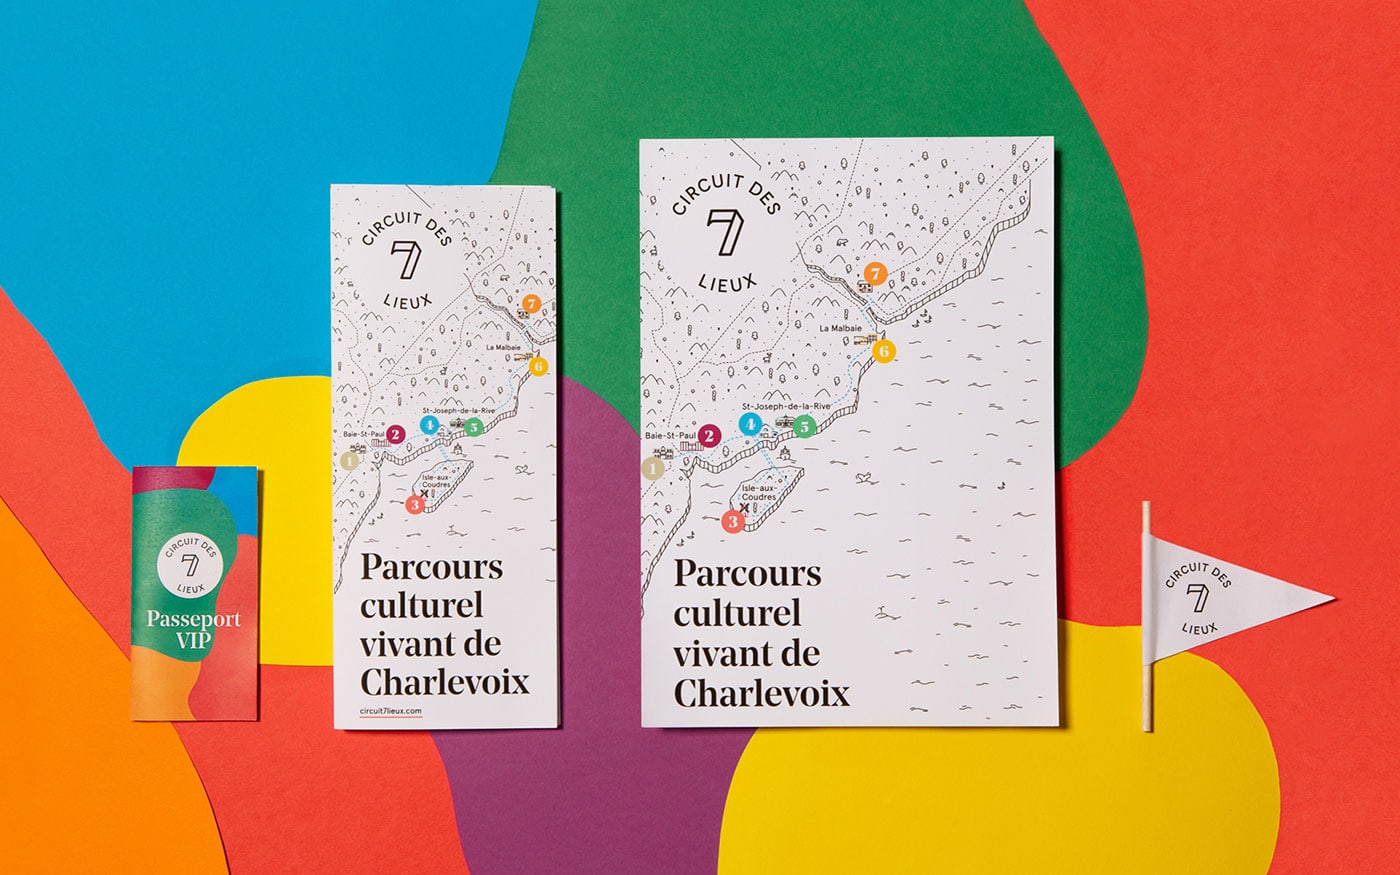 Le Circuit des 7 lieux：Charlevoix旅游宣传册设计